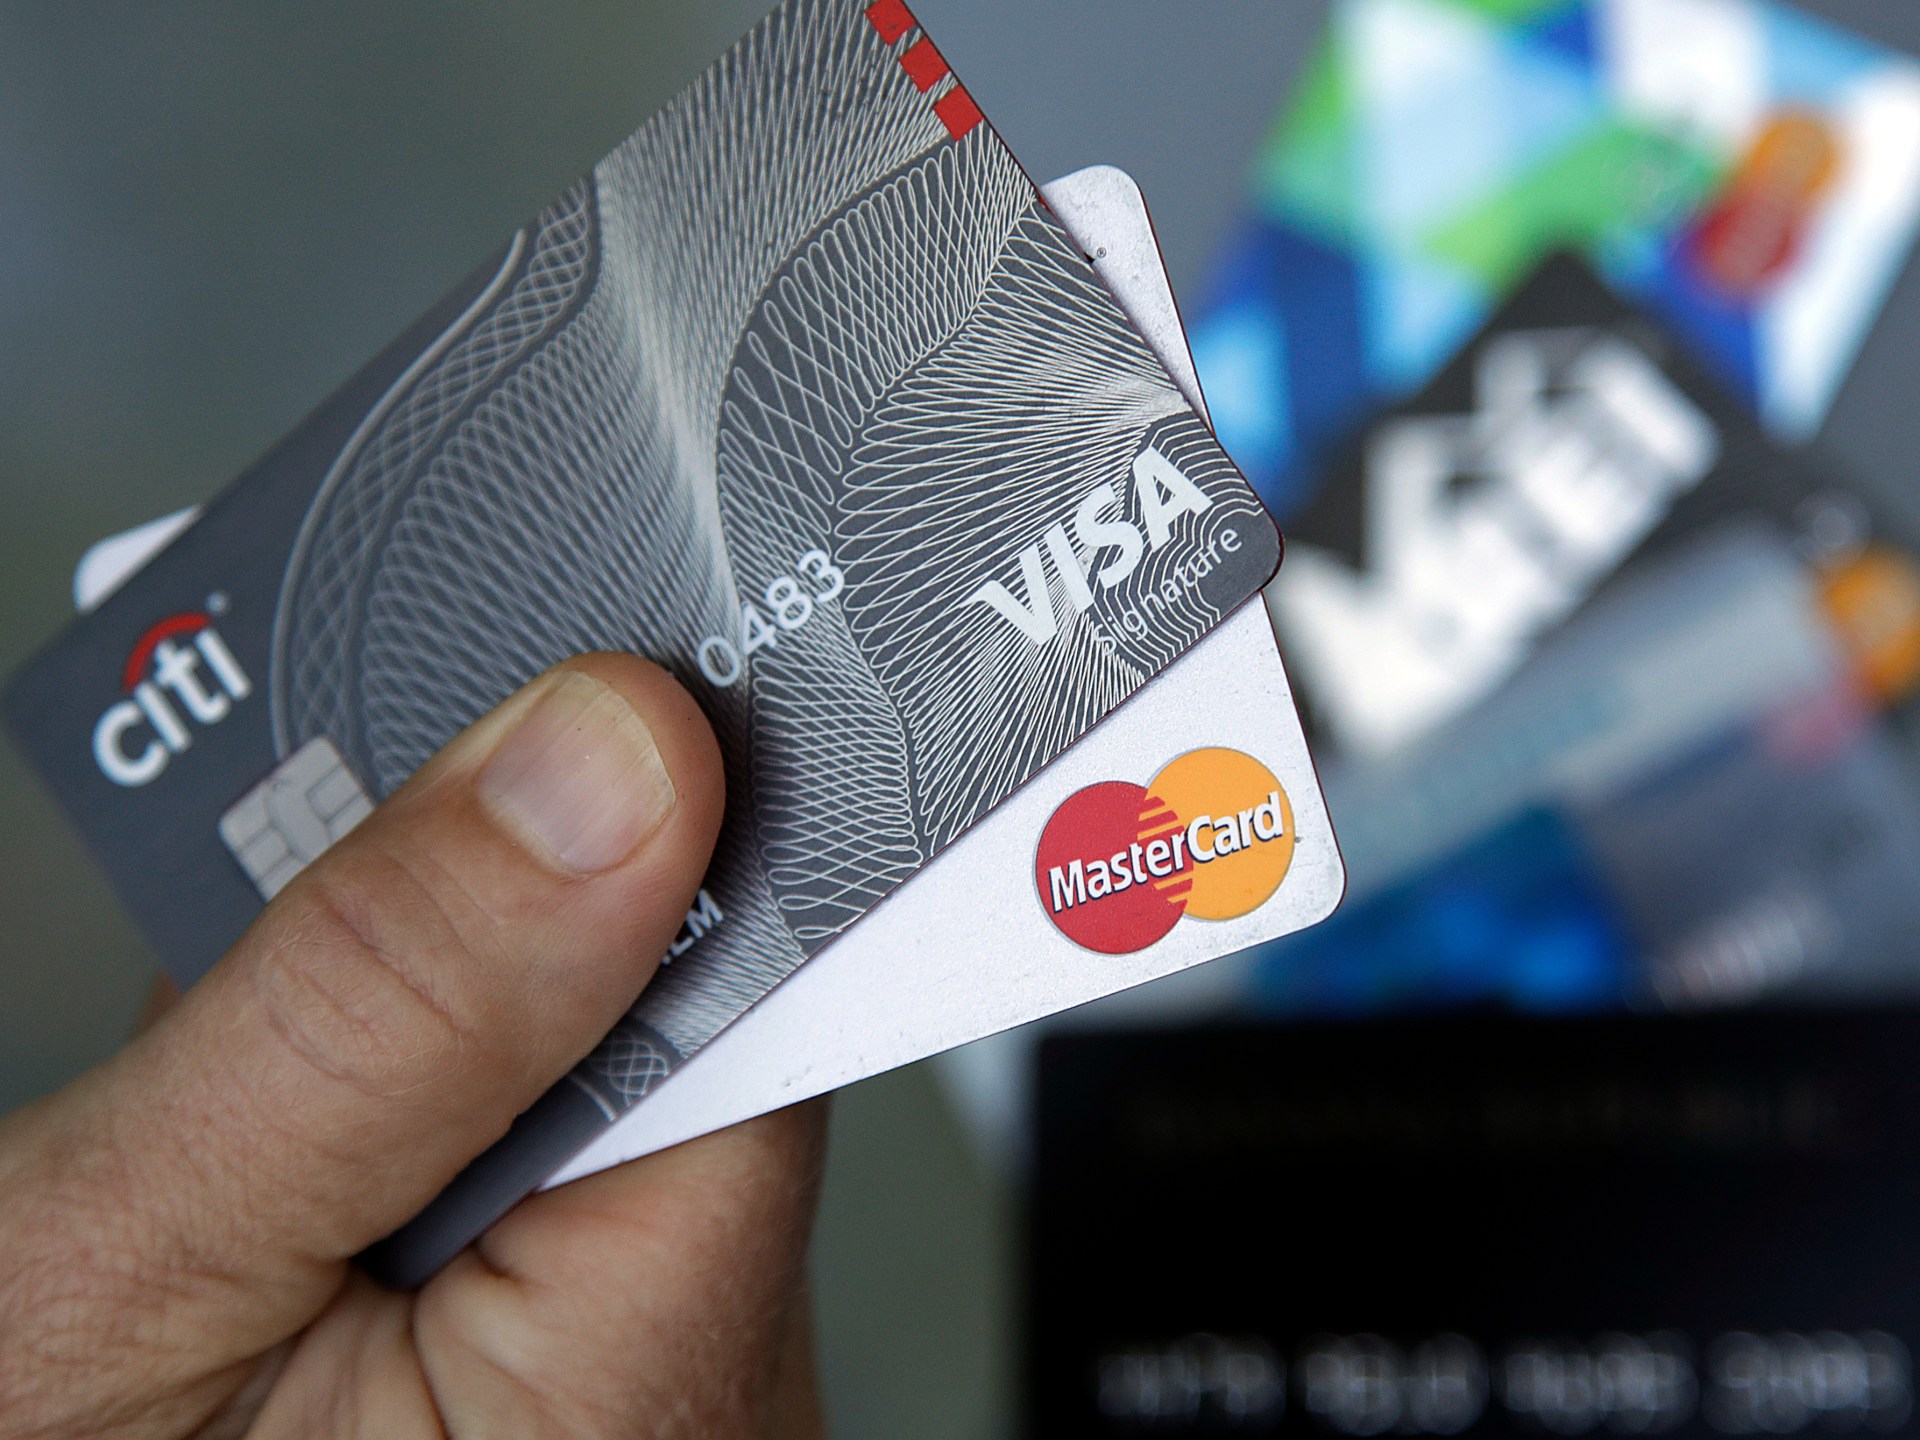 Visa и MasterCard урегулировали расходы по кредитным картам на сумму 30 миллиардов долларов |  Новости бизнеса и экономики